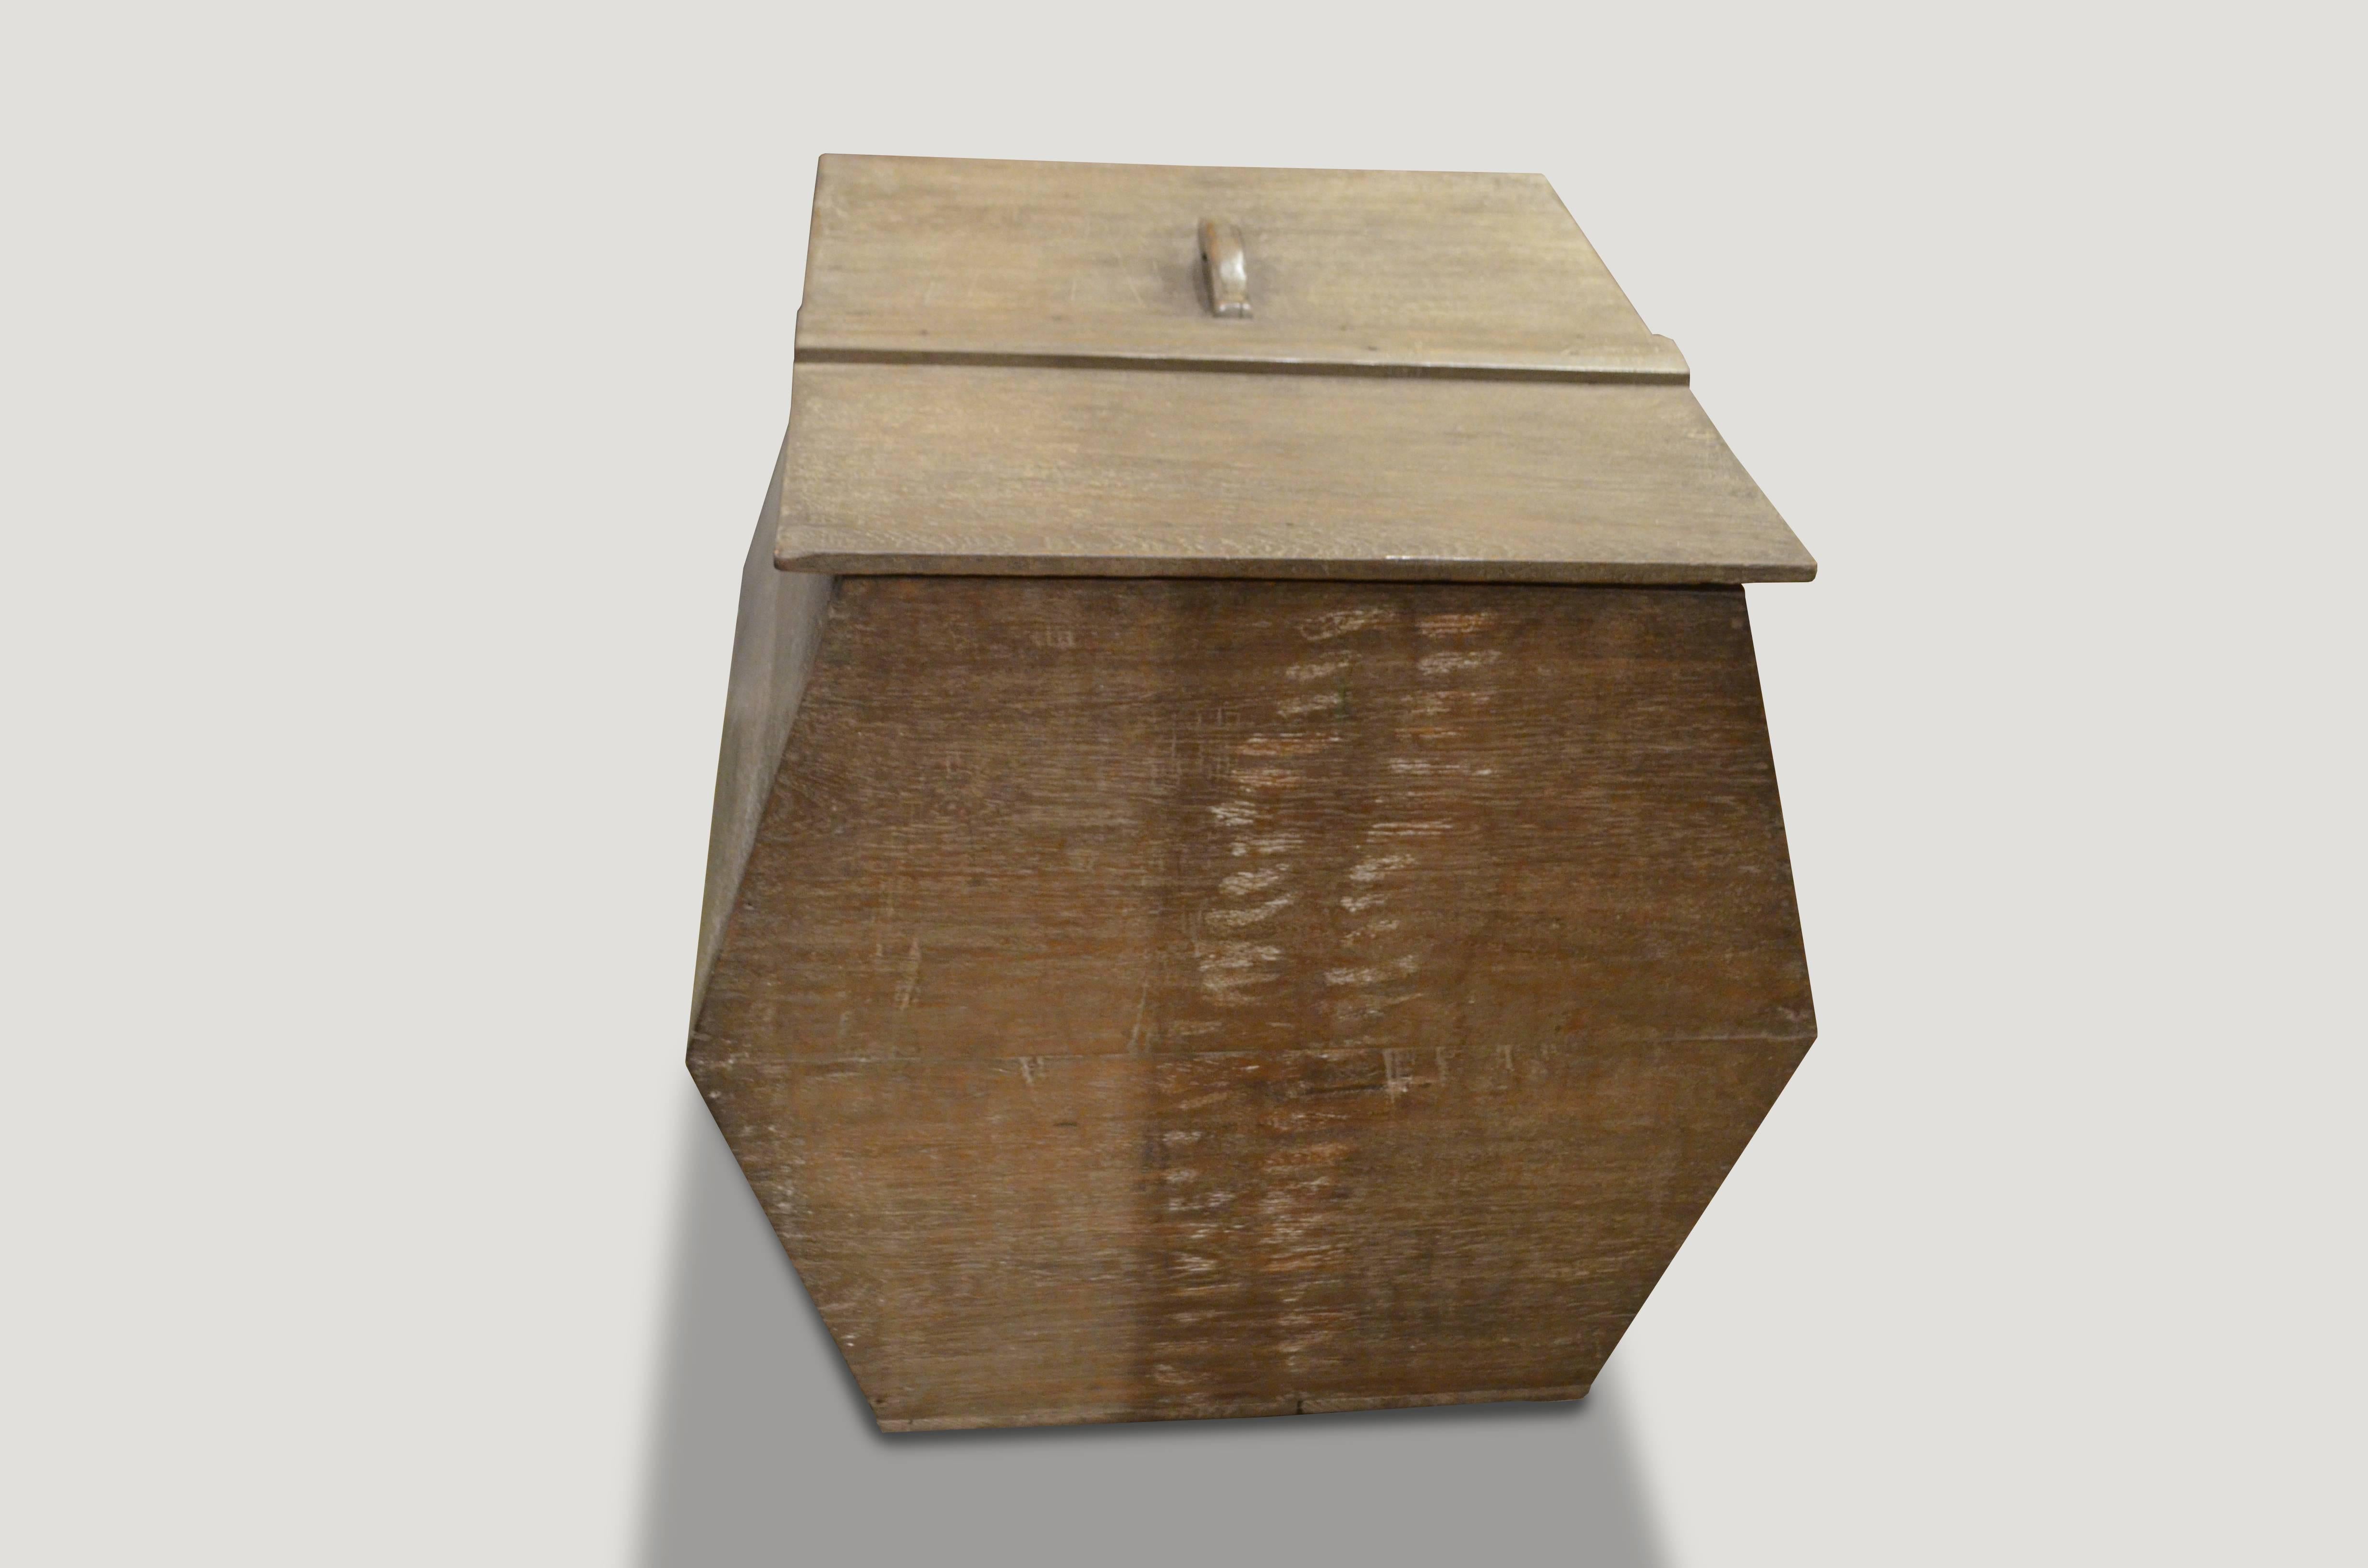 Eine ungewöhnlich geformte Wabi-Box, die ursprünglich zur Aufbewahrung von Reis verwendet wurde. Schöne Patina auf einem alten Teakholzstück.

Diese Box wurde im Geiste von Wabi-Sabi entworfen, einer japanischen Philosophie, die besagt, dass